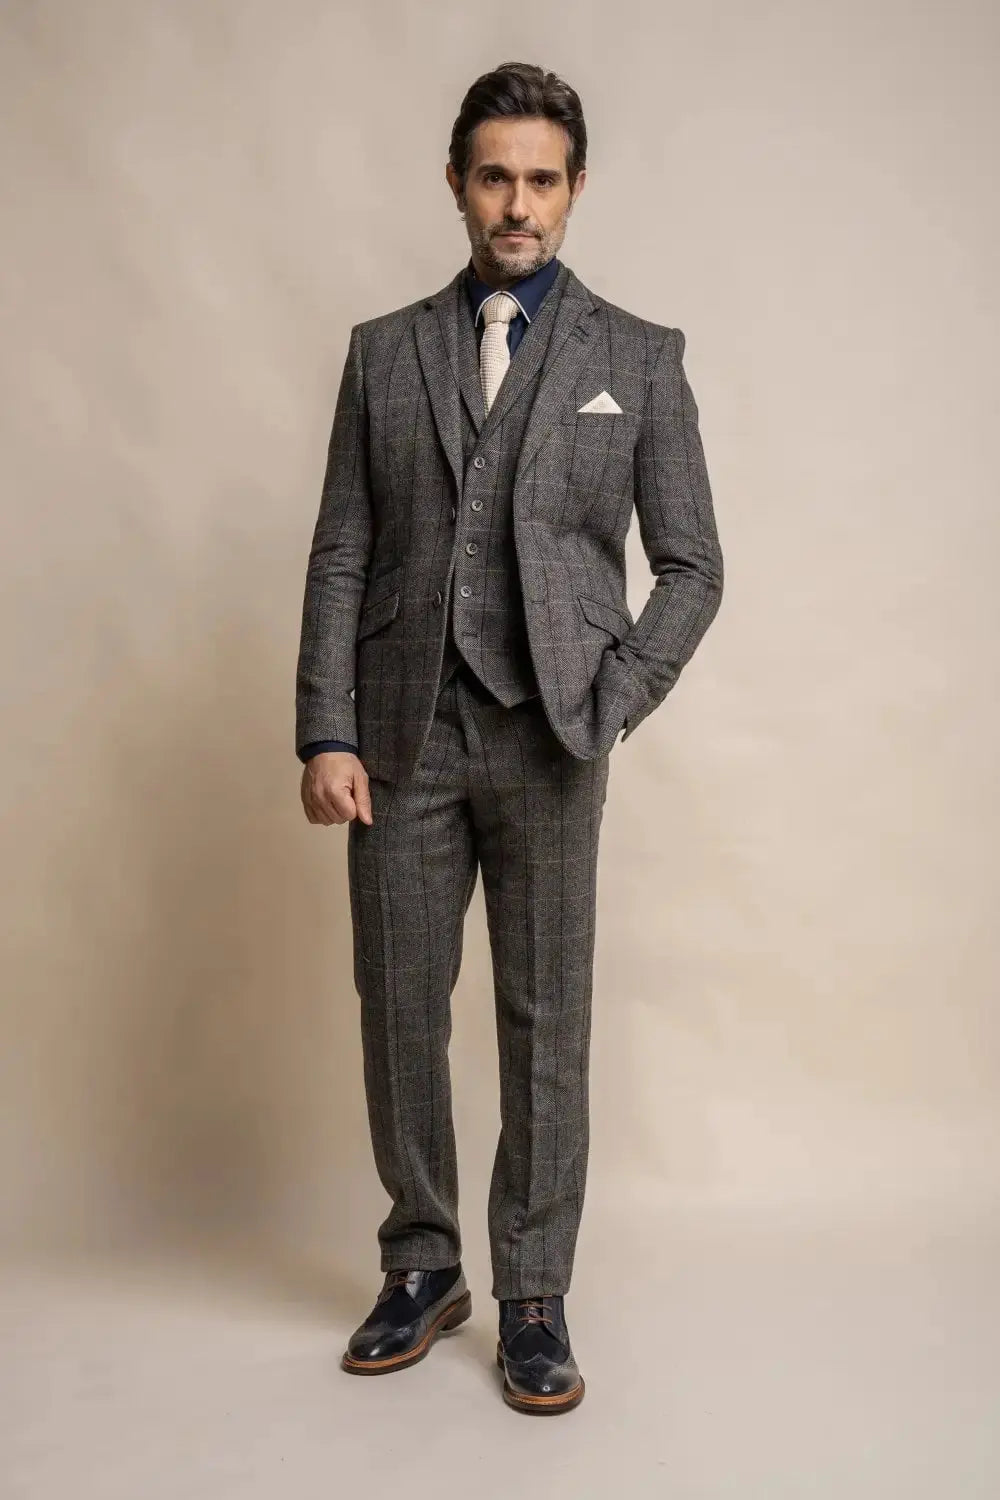 HOUSE OF CAVANI Albert Grey Tweed Check Suit